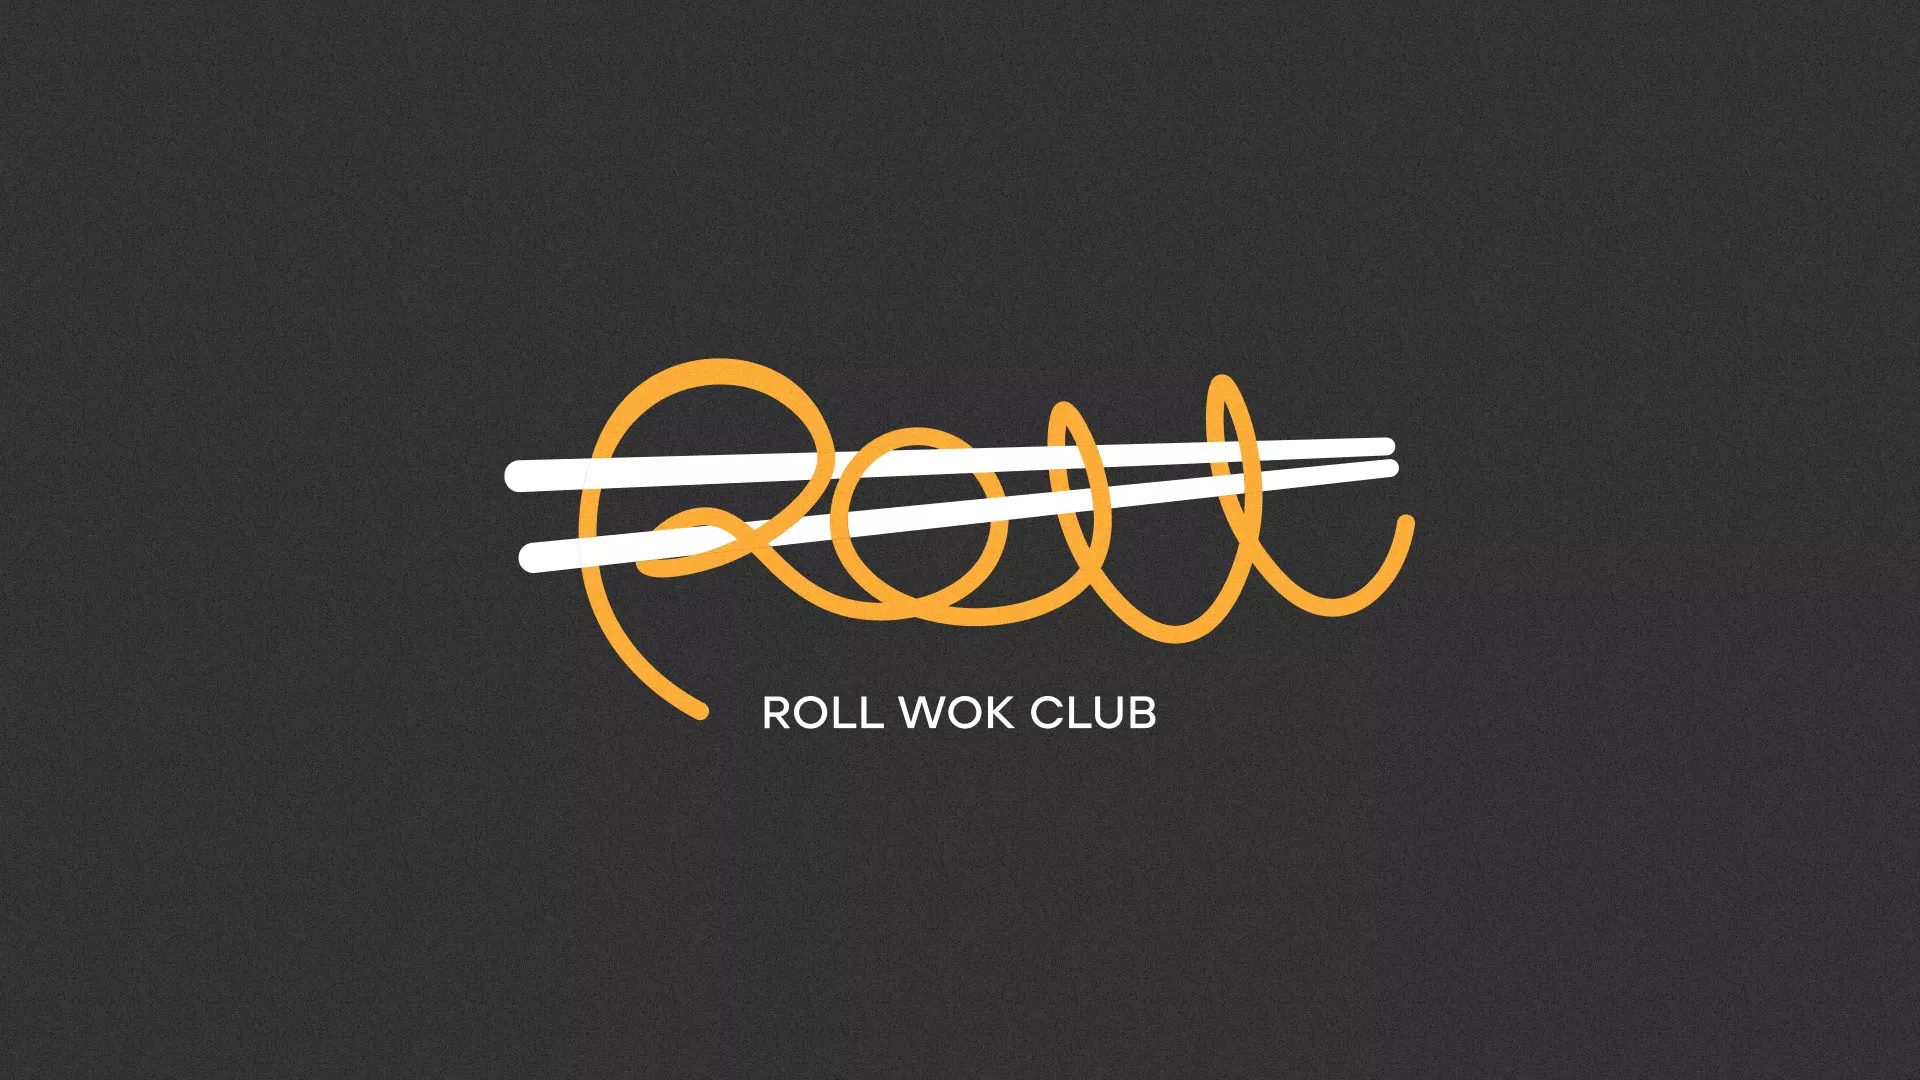 Создание дизайна листовок суши-бара «Roll Wok Club» в Железногорске-Илимском